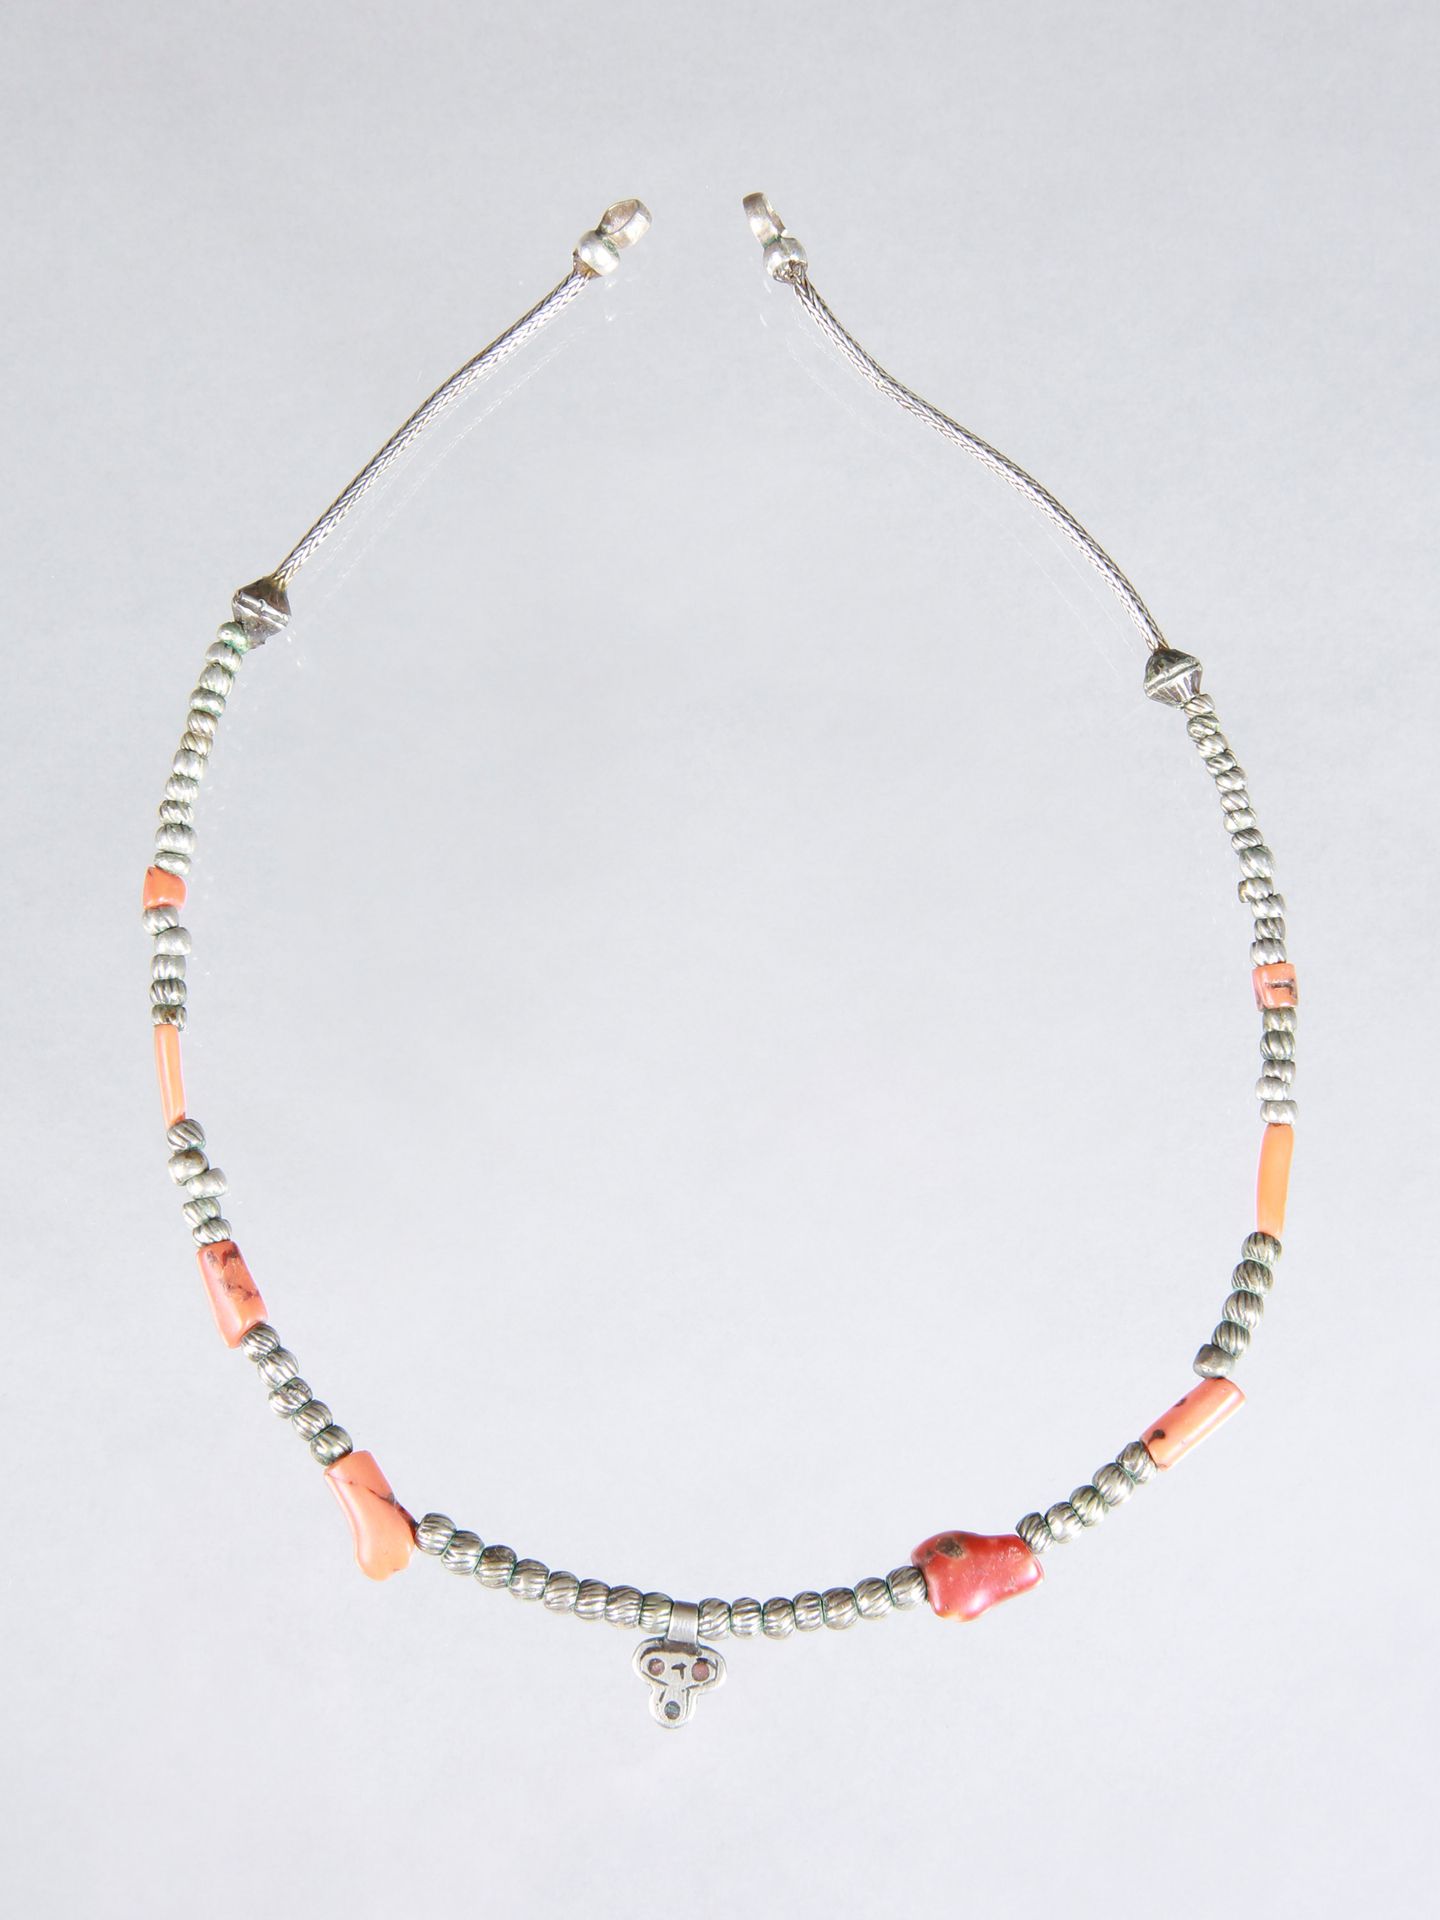 A Berber Necklace 项链

柏柏尔人，萨赫勒人

Ohne Sockel / 无底座

银色，珊瑚色。高7厘米。长34厘米。

 

出处。

&hellip;